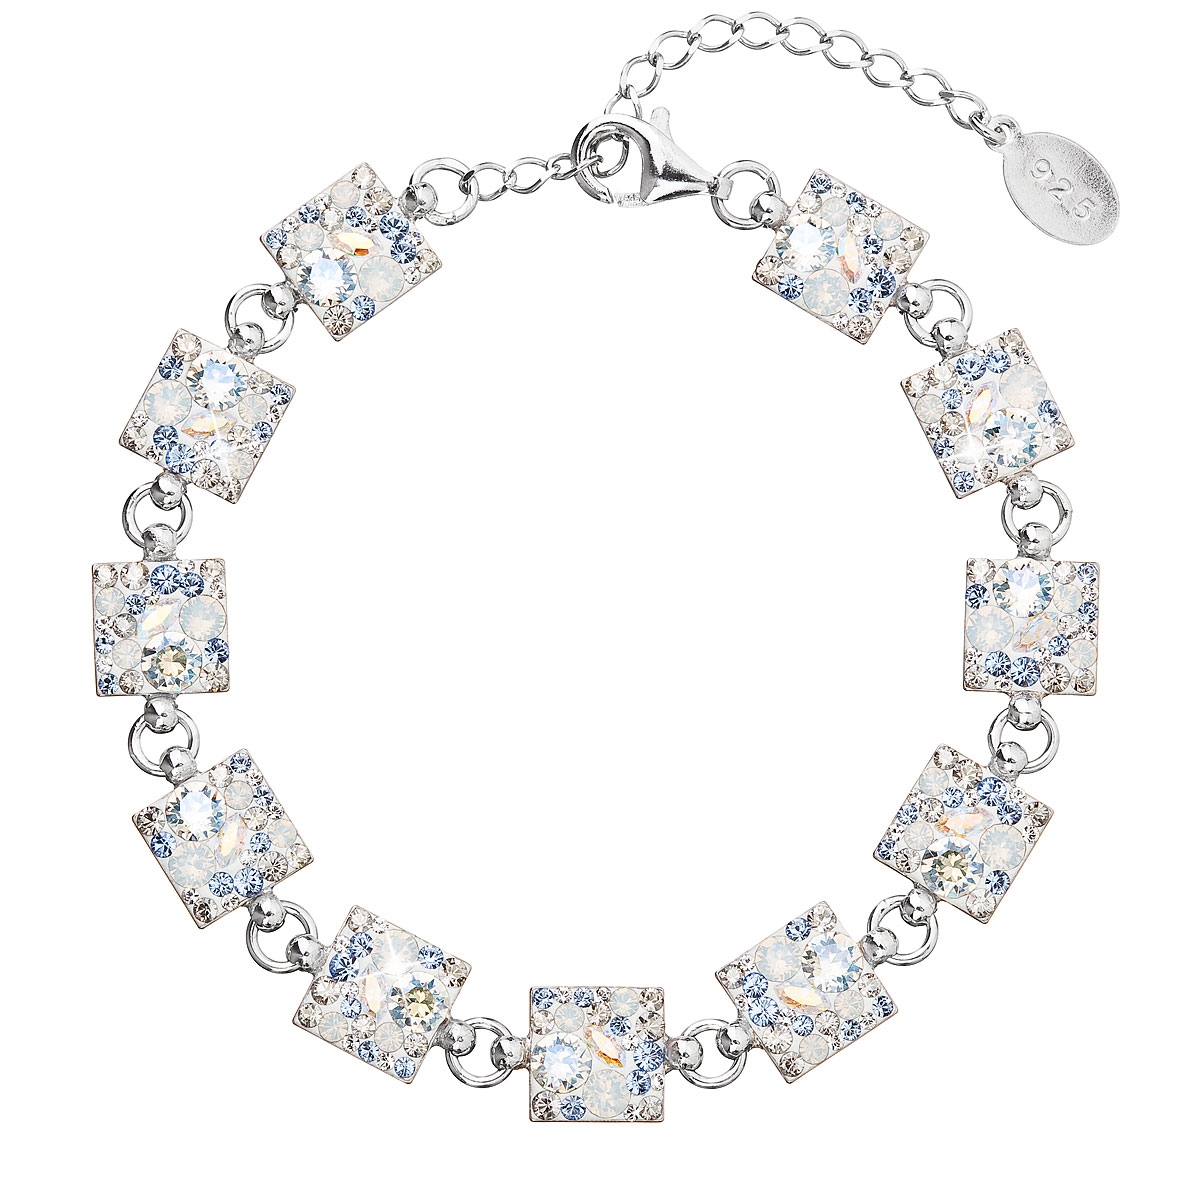 Strieborný náramok s kryštálmi Crystals from Swarovski ® Light Sapphire